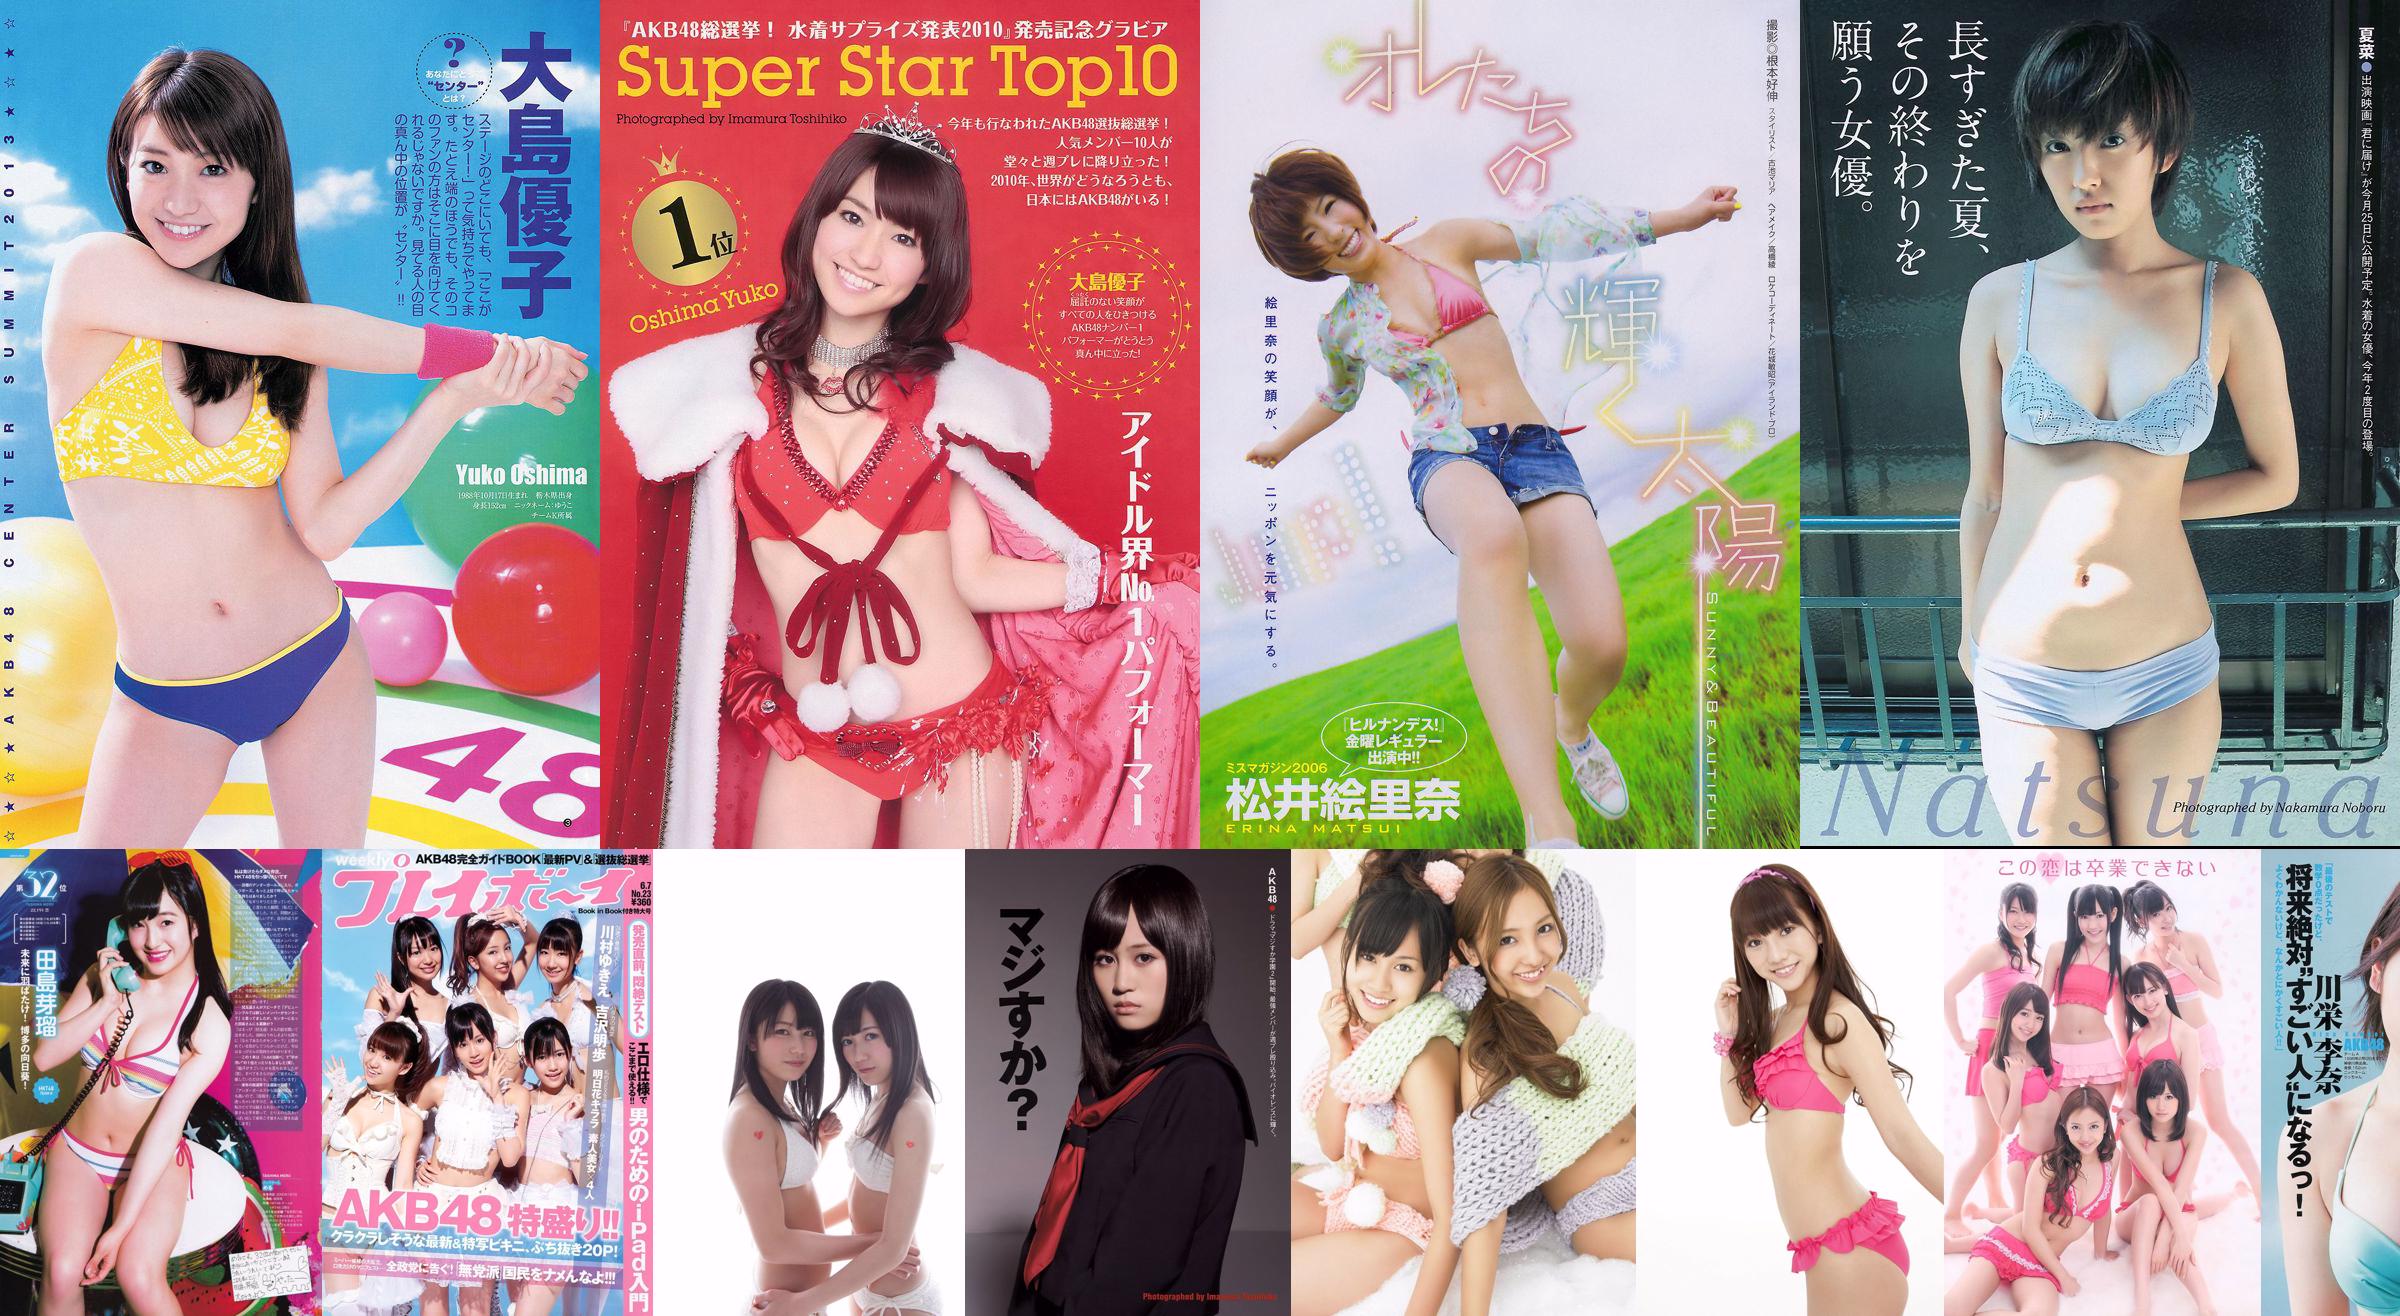 AKB48 Komatsu Mizuki [Weekly ヤングジャンプ] No.48 Photo Magazine ในปี 2011 No.d015e6 หน้า 1